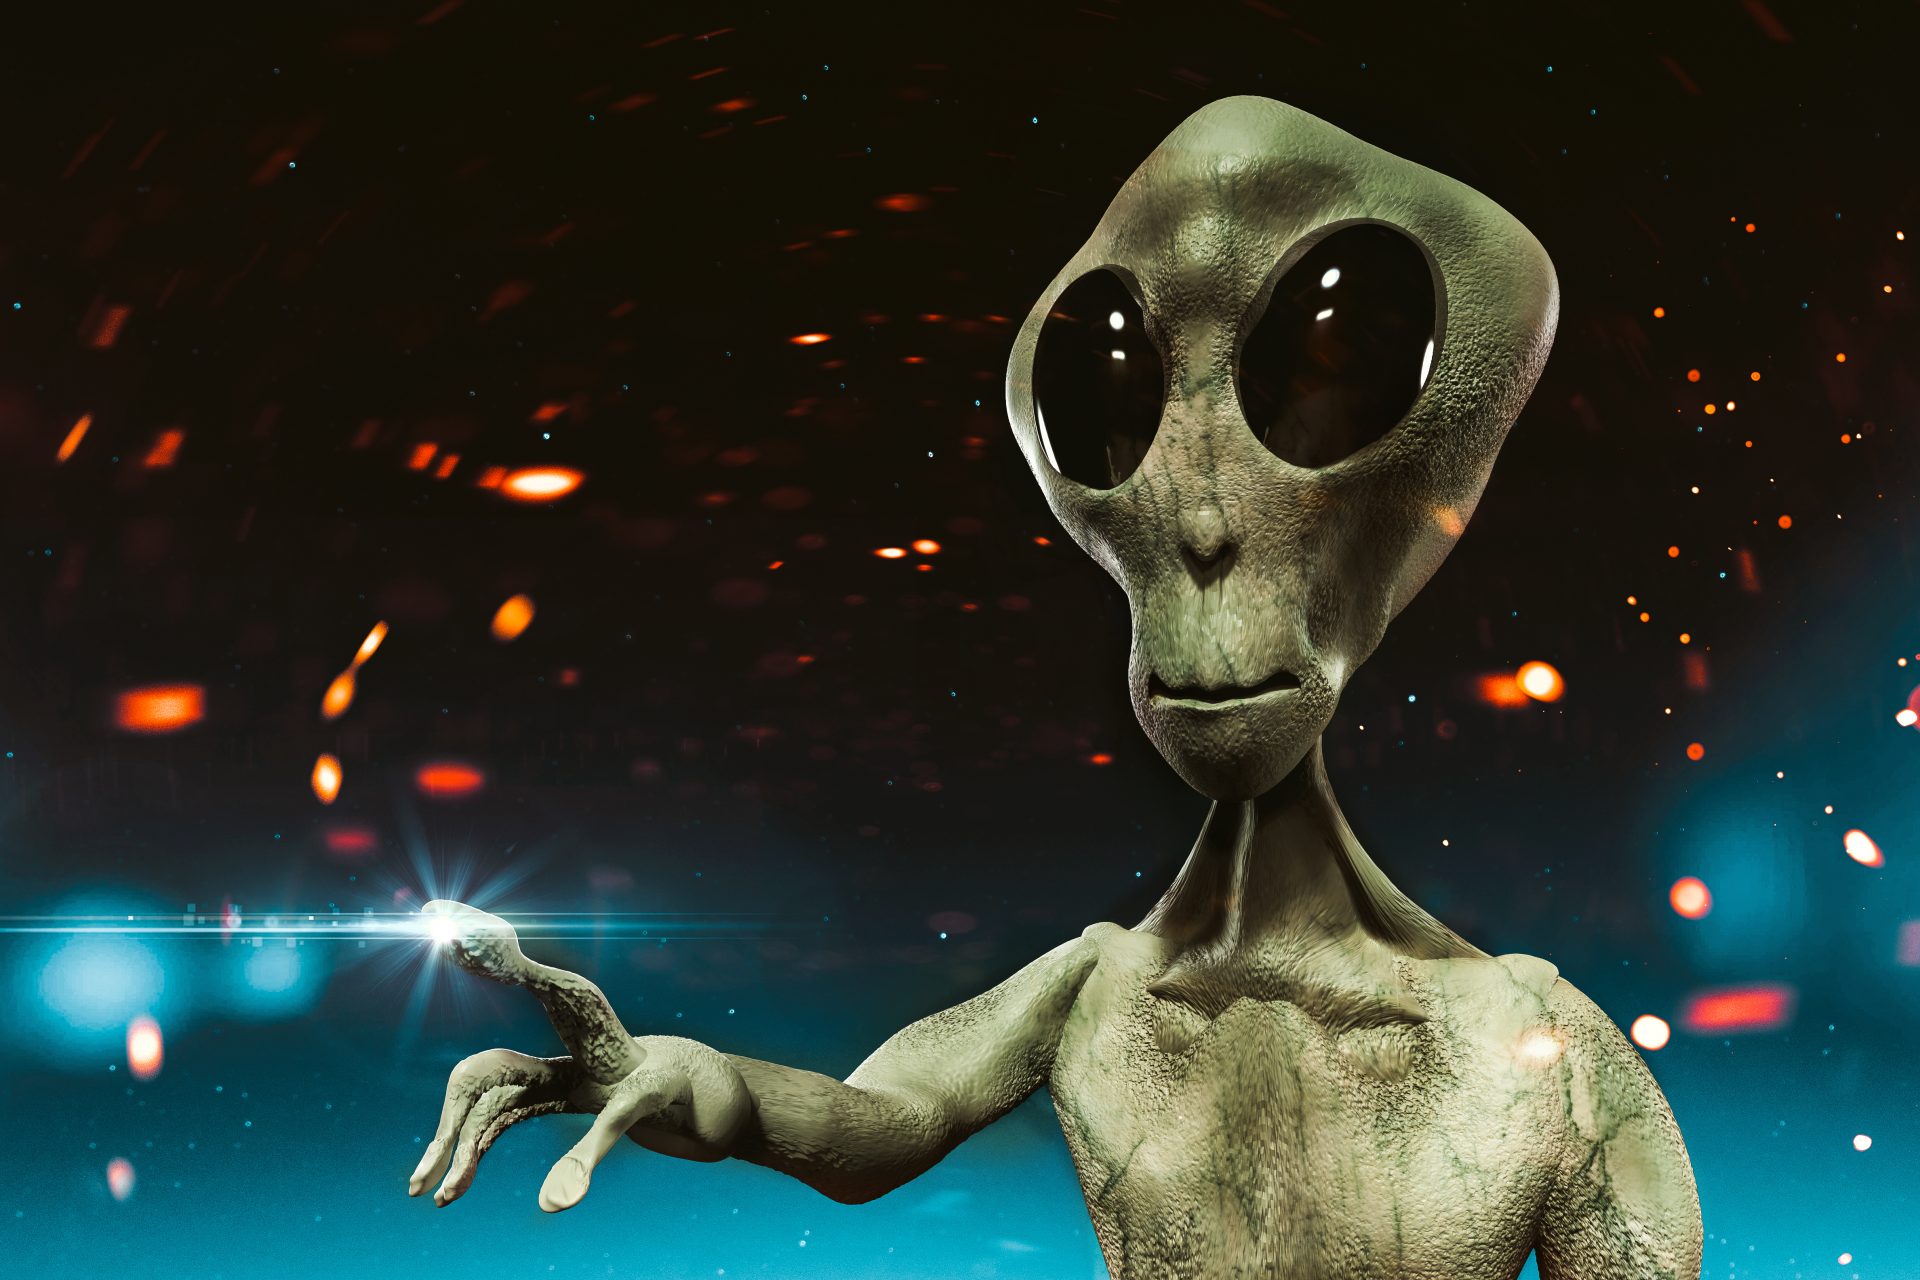 E.T. witness from Varginha